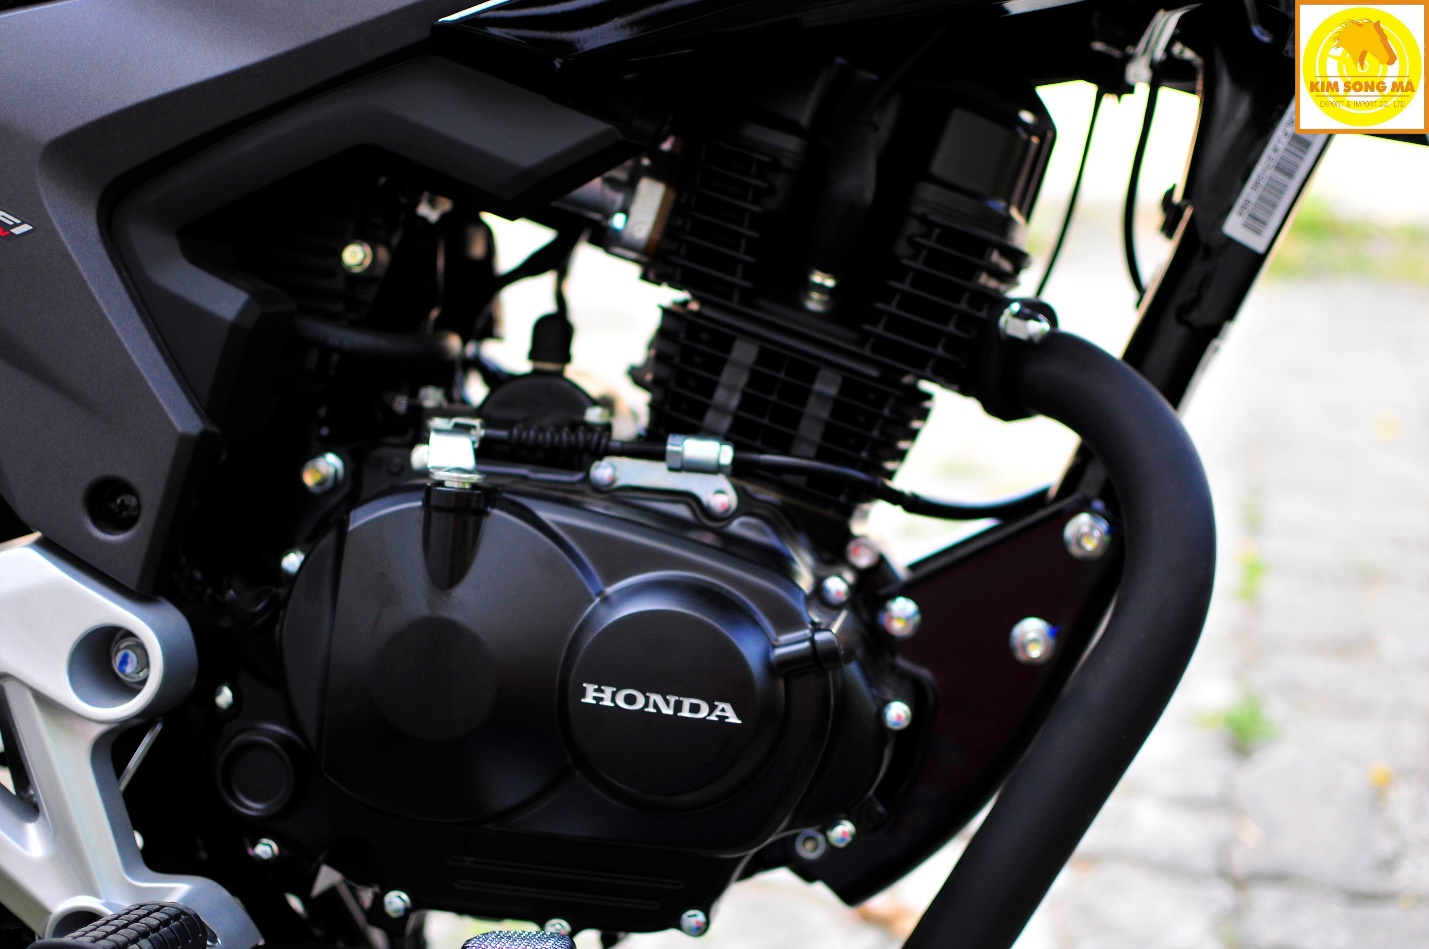 Bán xe Honda CBF 125R cũ màu đen giá 3x triệu Alo Mạnh Motor 0978968486  nhé  YouTube